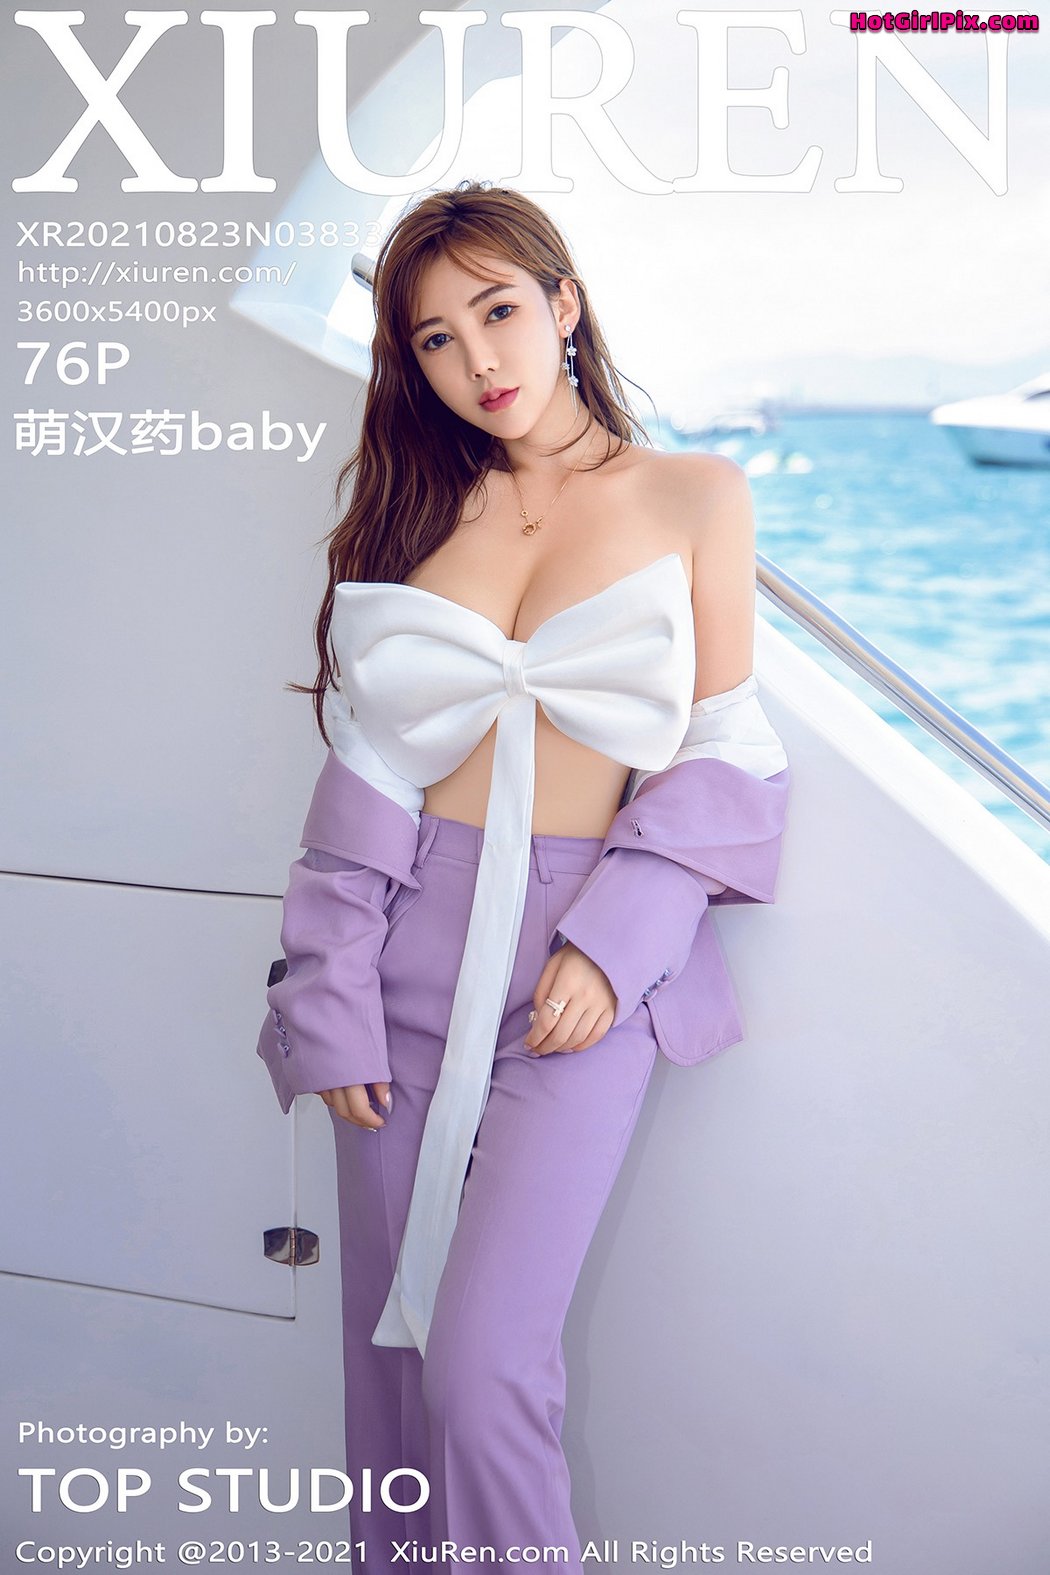 [XIUREN] No.3833 萌汉药baby Cover Photo